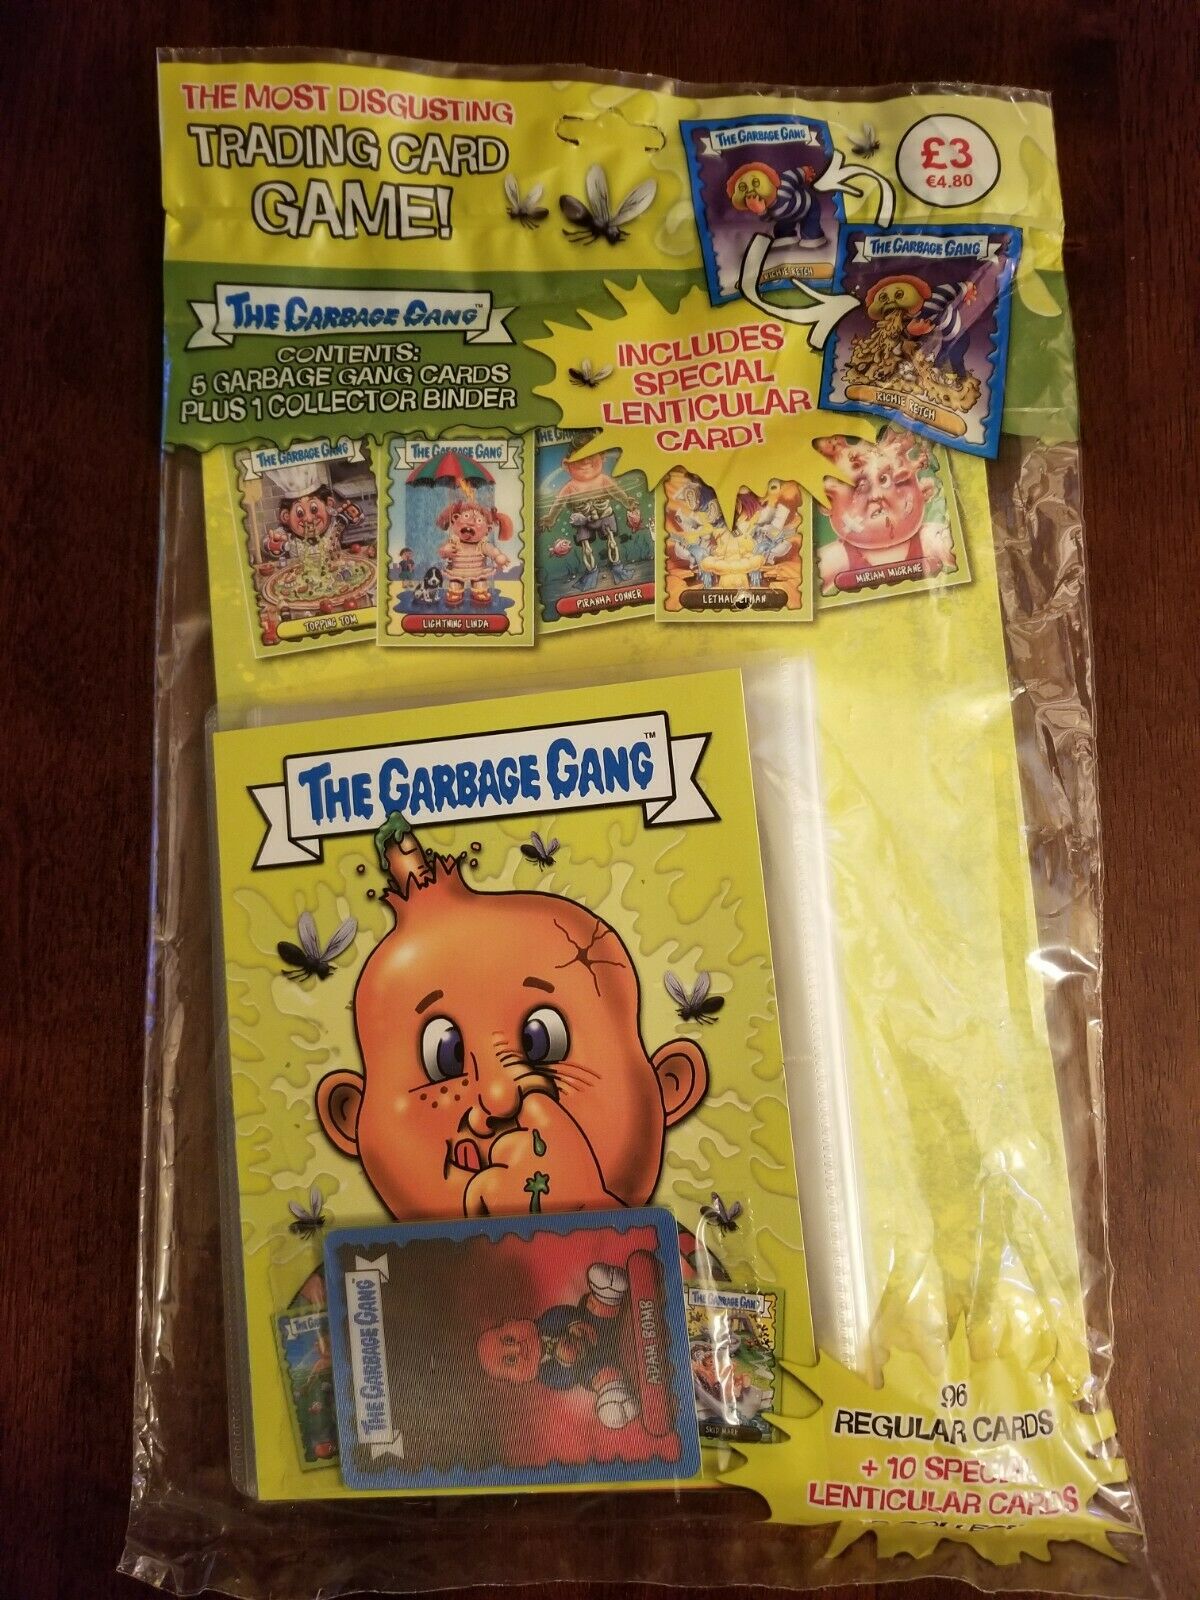 Garbage Pail Kids Trading Card Game - Garbage Gang Card Album